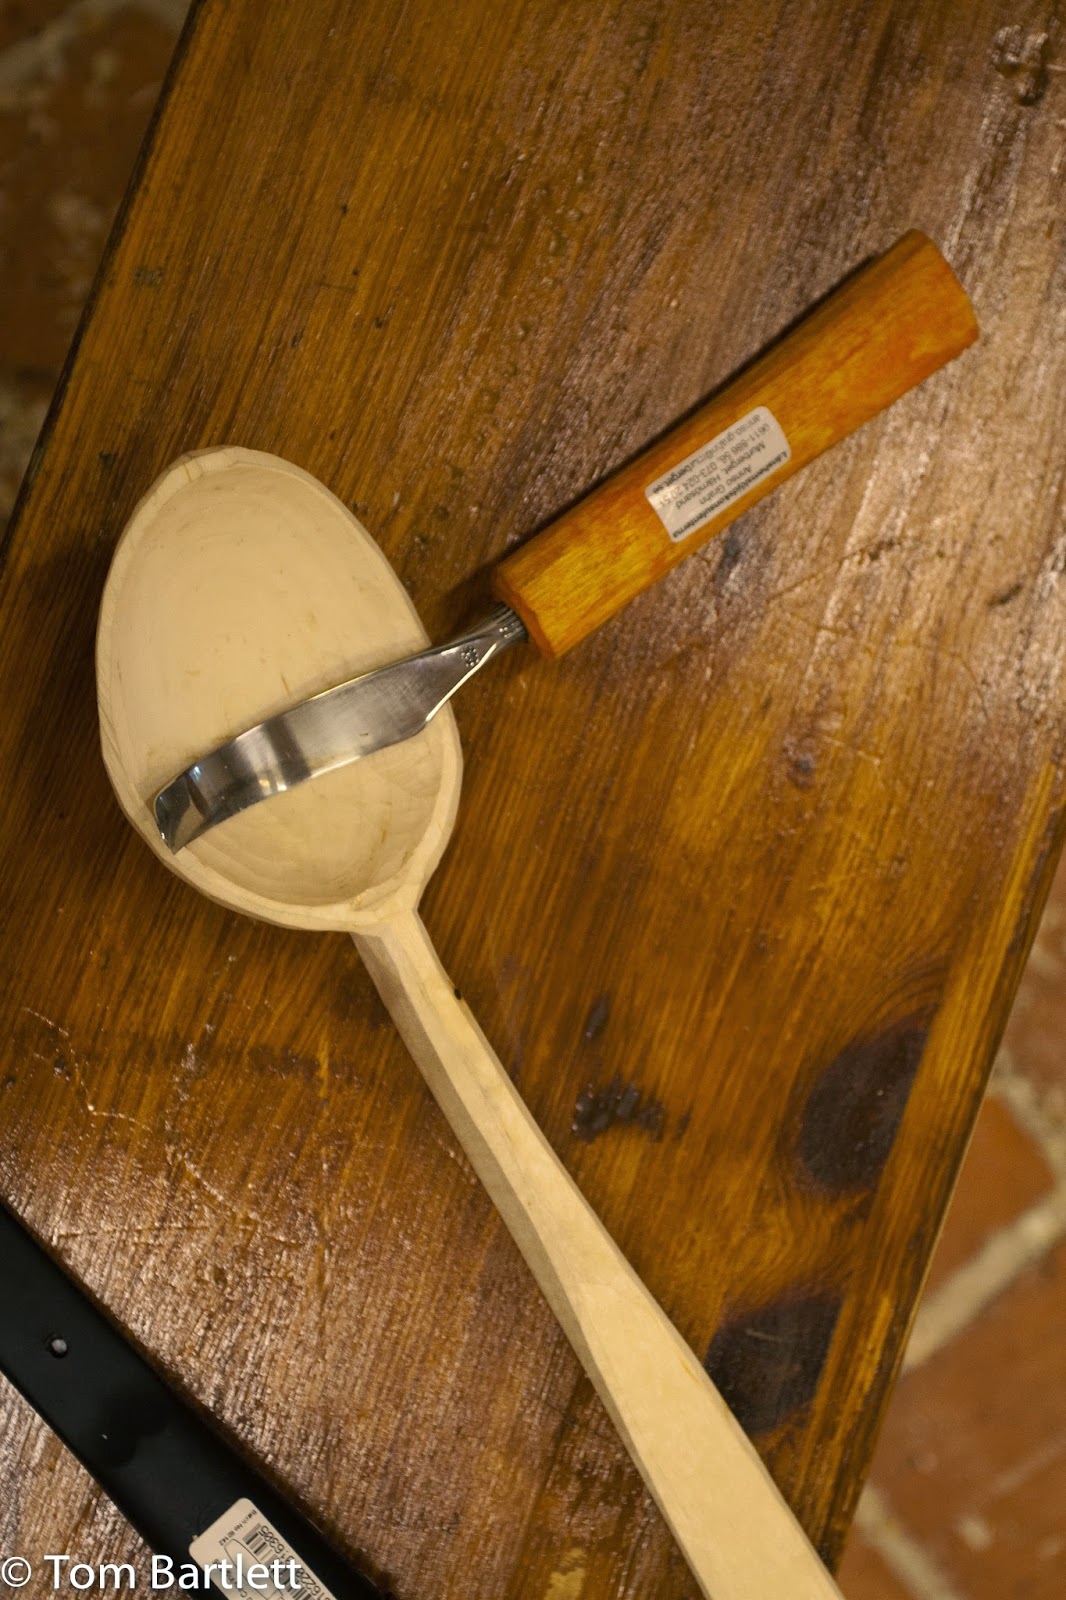 Carved Spoons: Skedfest